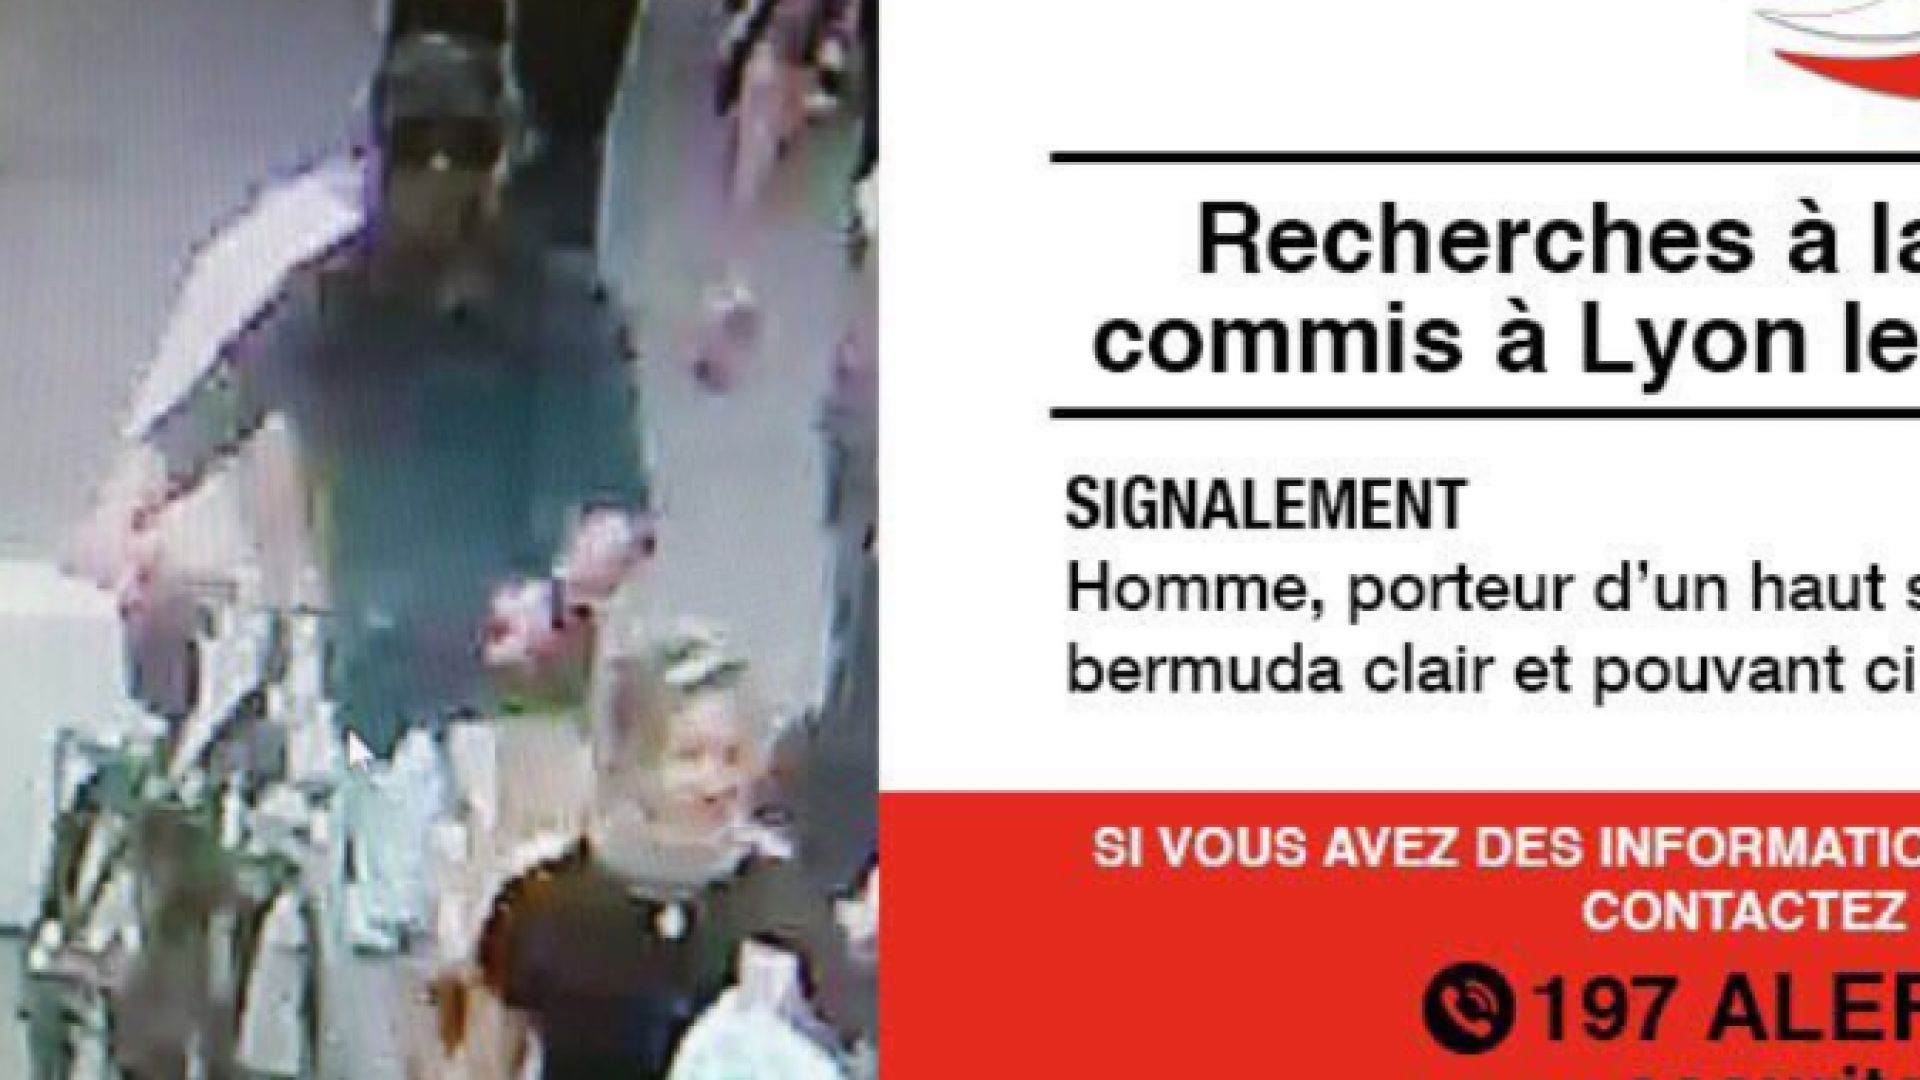 Френската полиция разпространи кадър от видеокамера с която е заснет